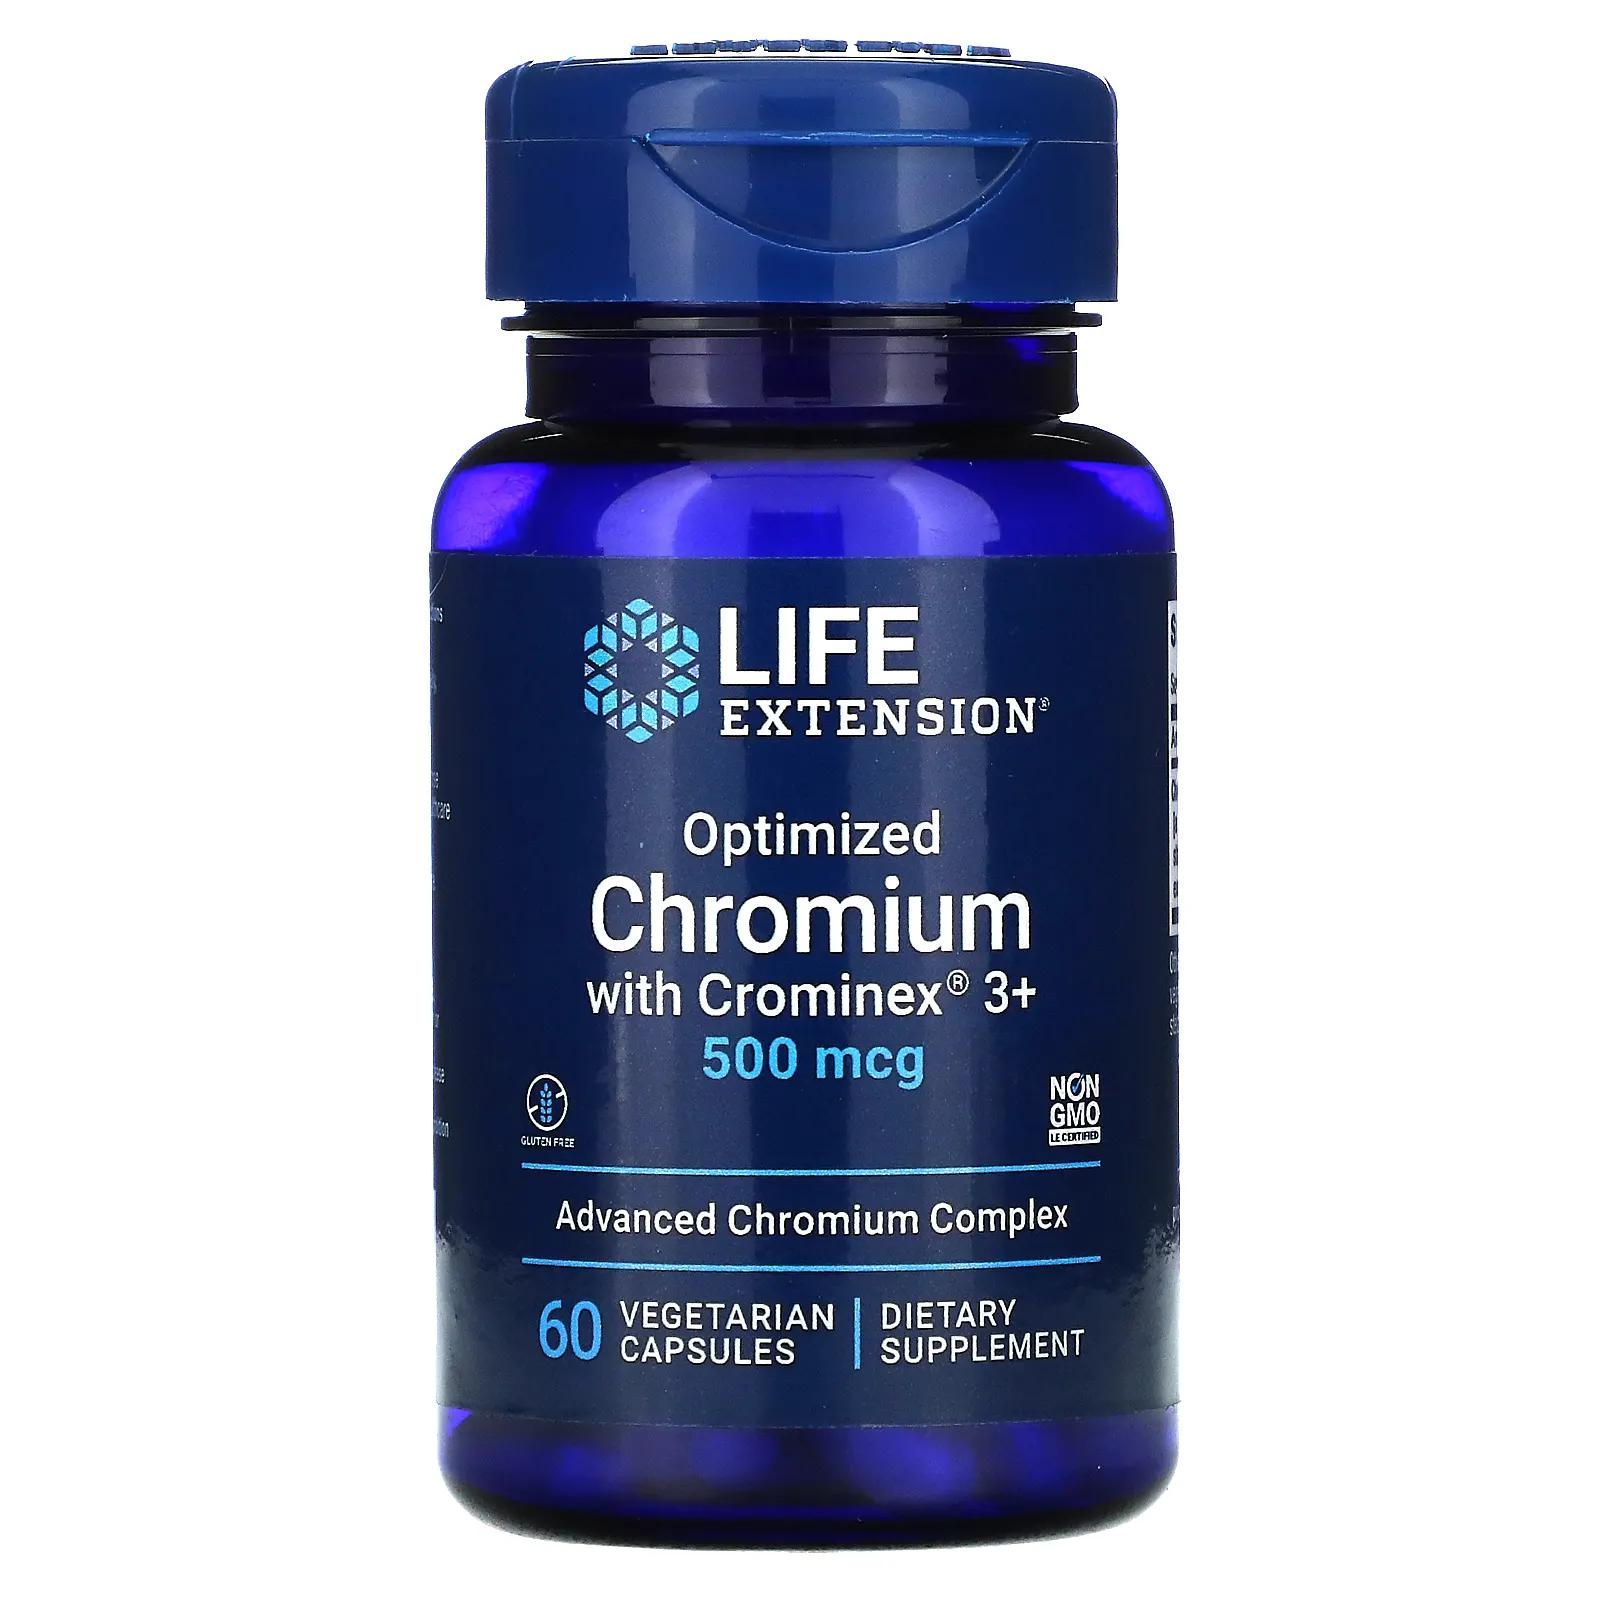 Life Extension Optimized Chromium with Crominex 3+ 500 mcg 60 Vegetarian Capsules